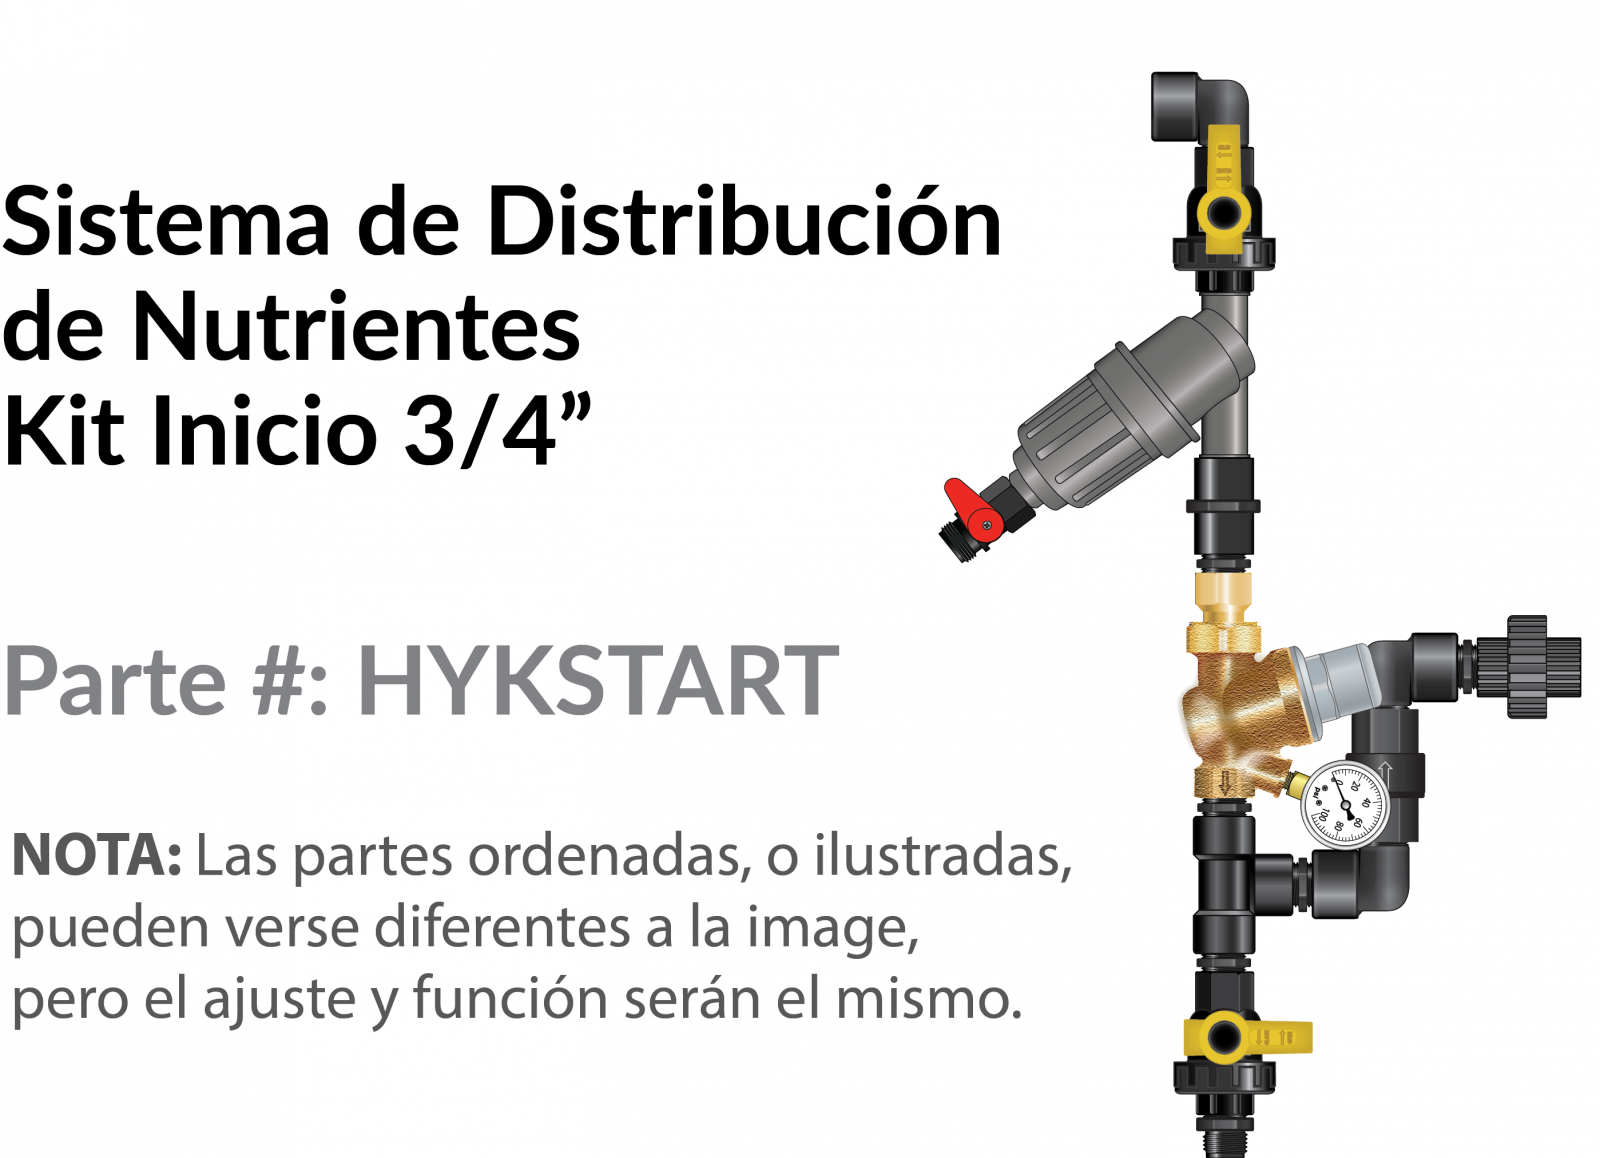 SP_HYKSTART Installation Image